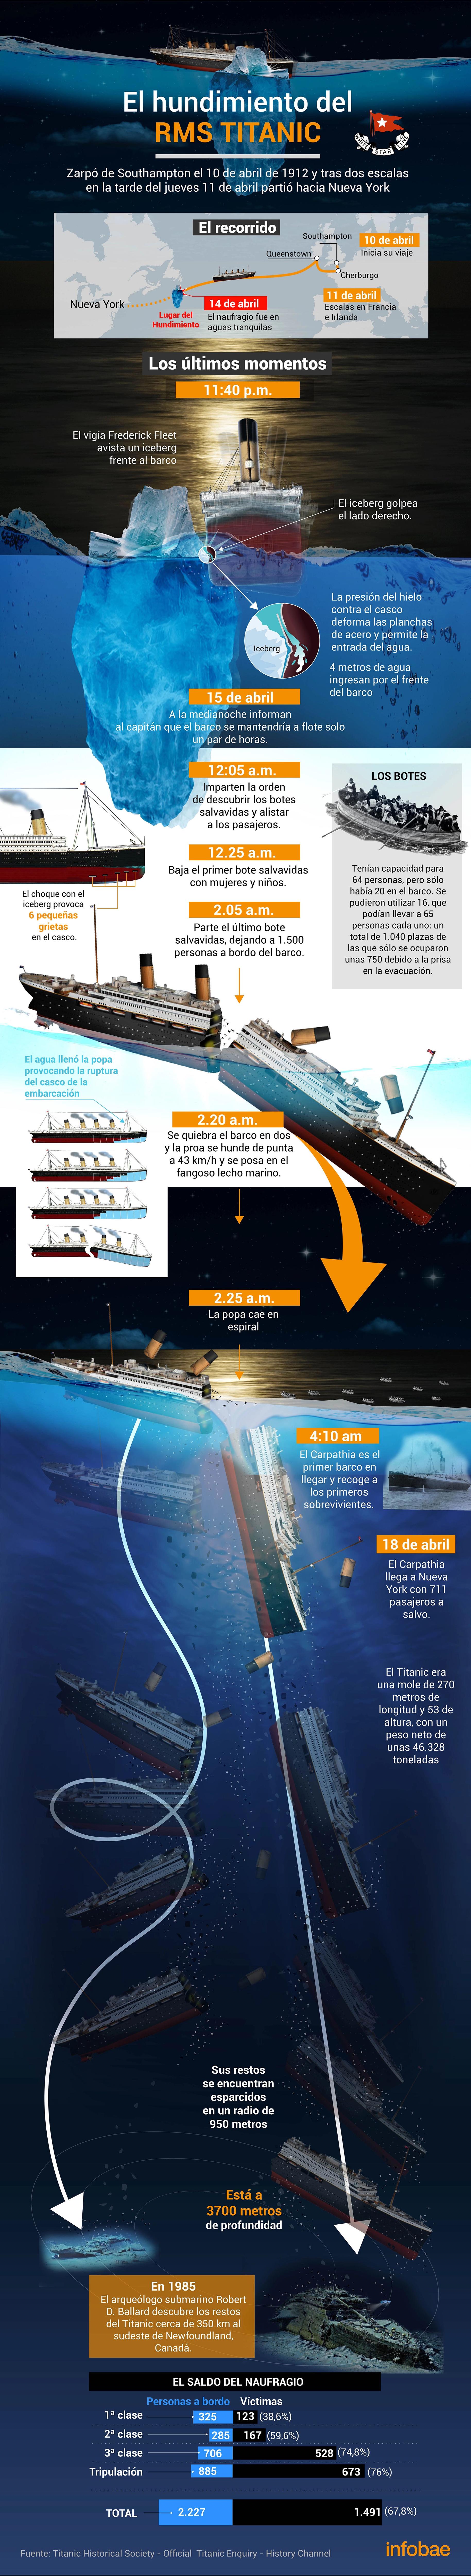 El hundimiento del Titanic, en datos y paso a paso